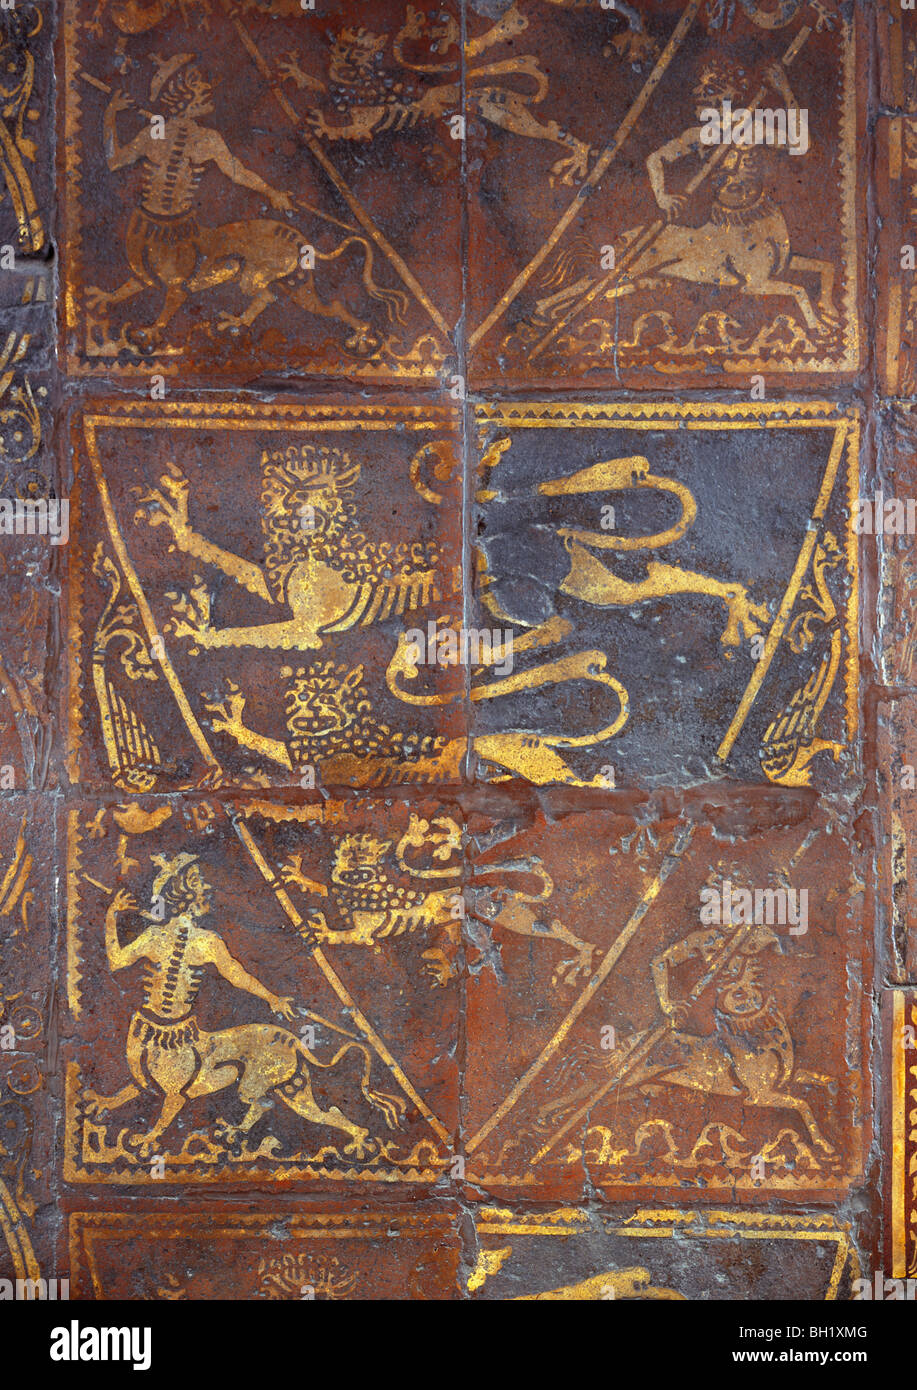 Abbazia di Westminster Capitolo casa medievale piastrelle del pavimento che mostra i tre leoni della monarchia inglese Foto Stock